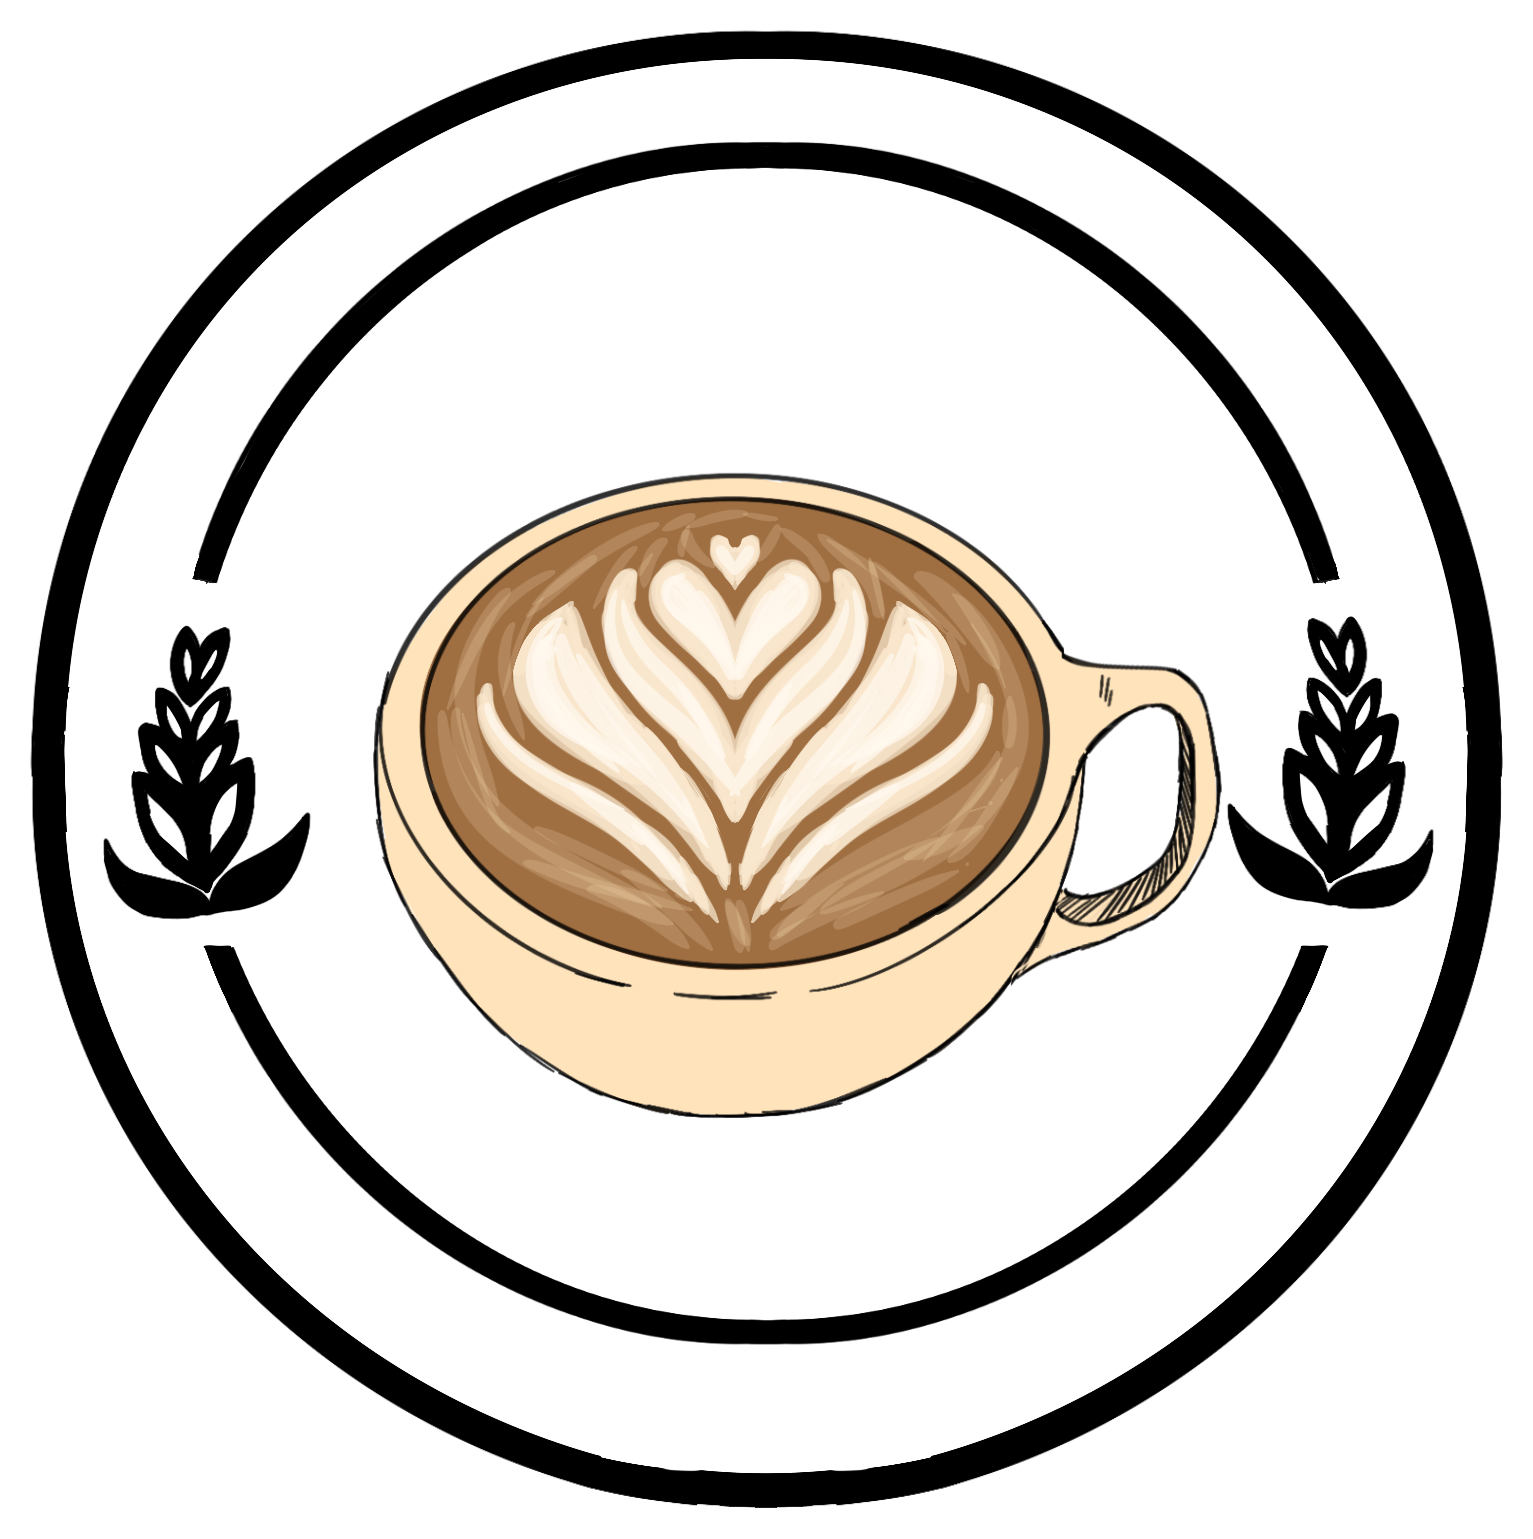 A latte with foam art.